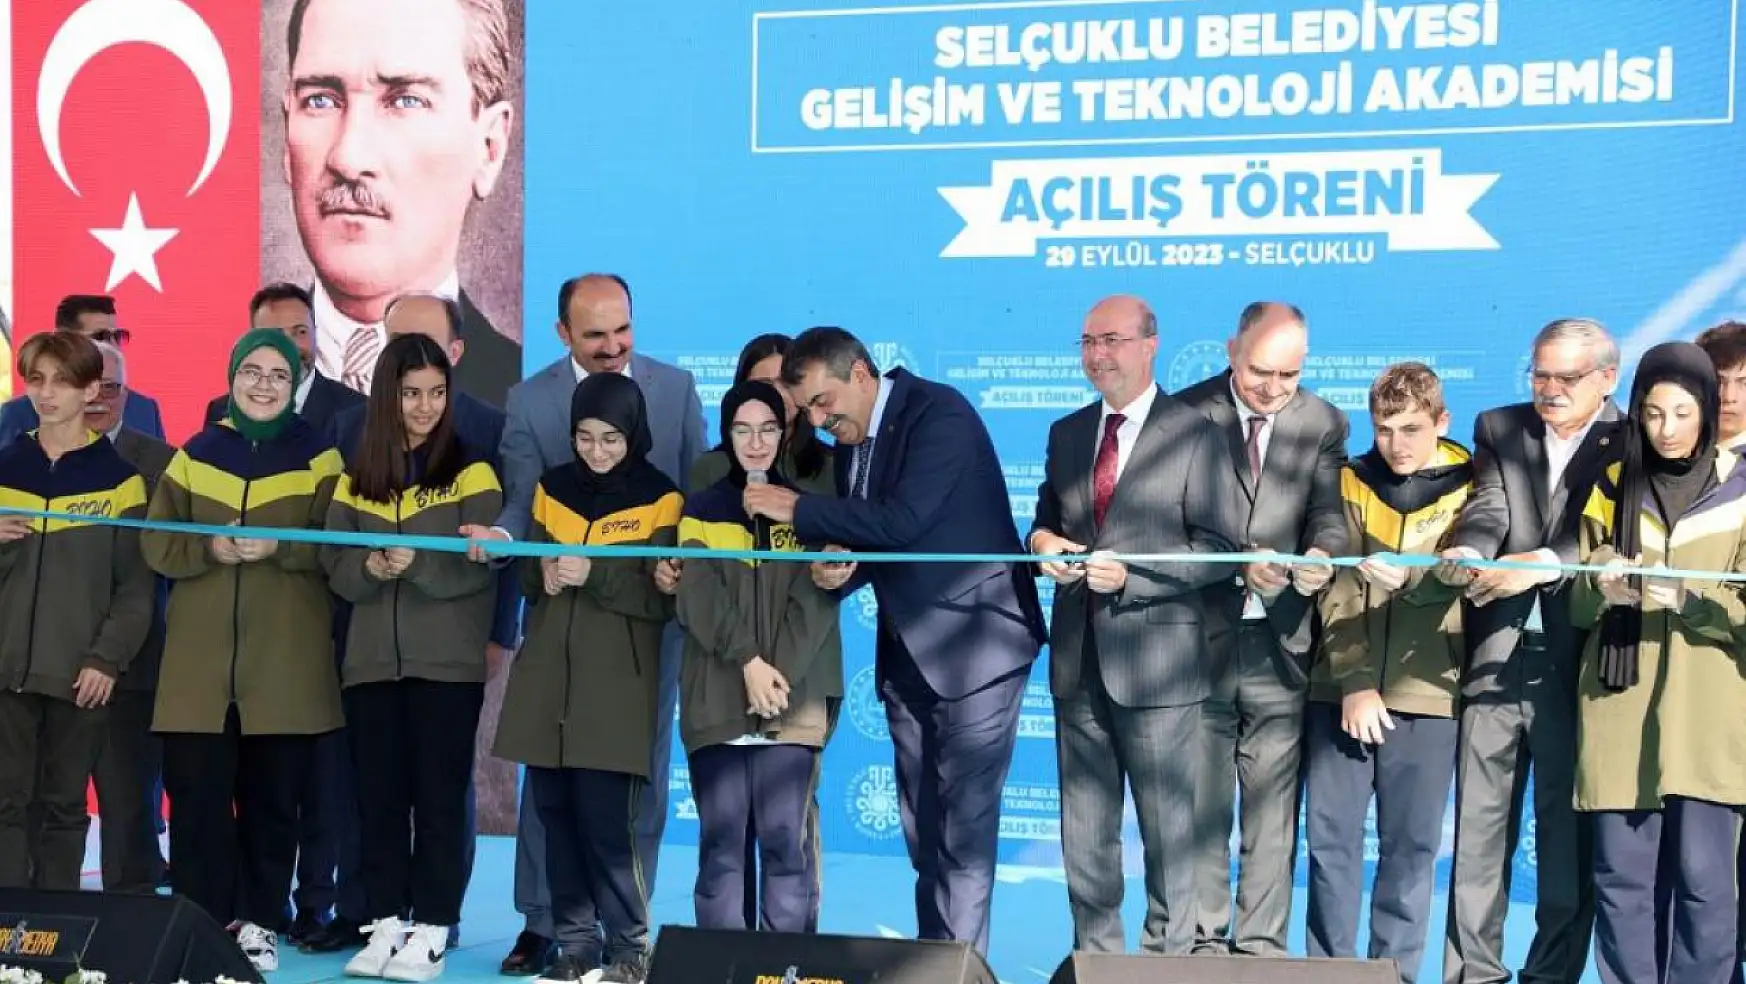 Selçuklu Belediyesi Konya'nın eğitim hayatına değerler katıyor!